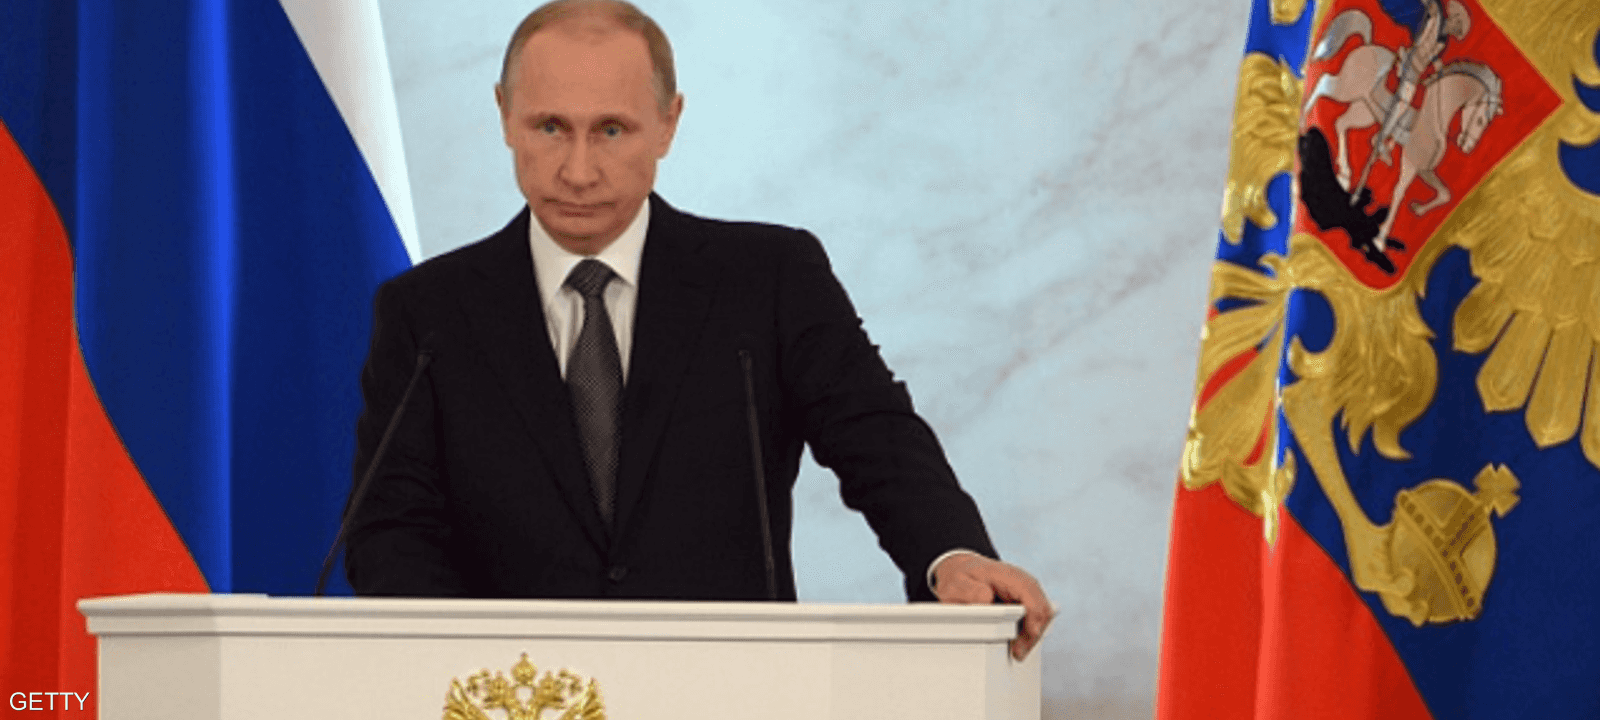 الرئيس الروسي فلاديمير بوتن بلقطة أرشيفية